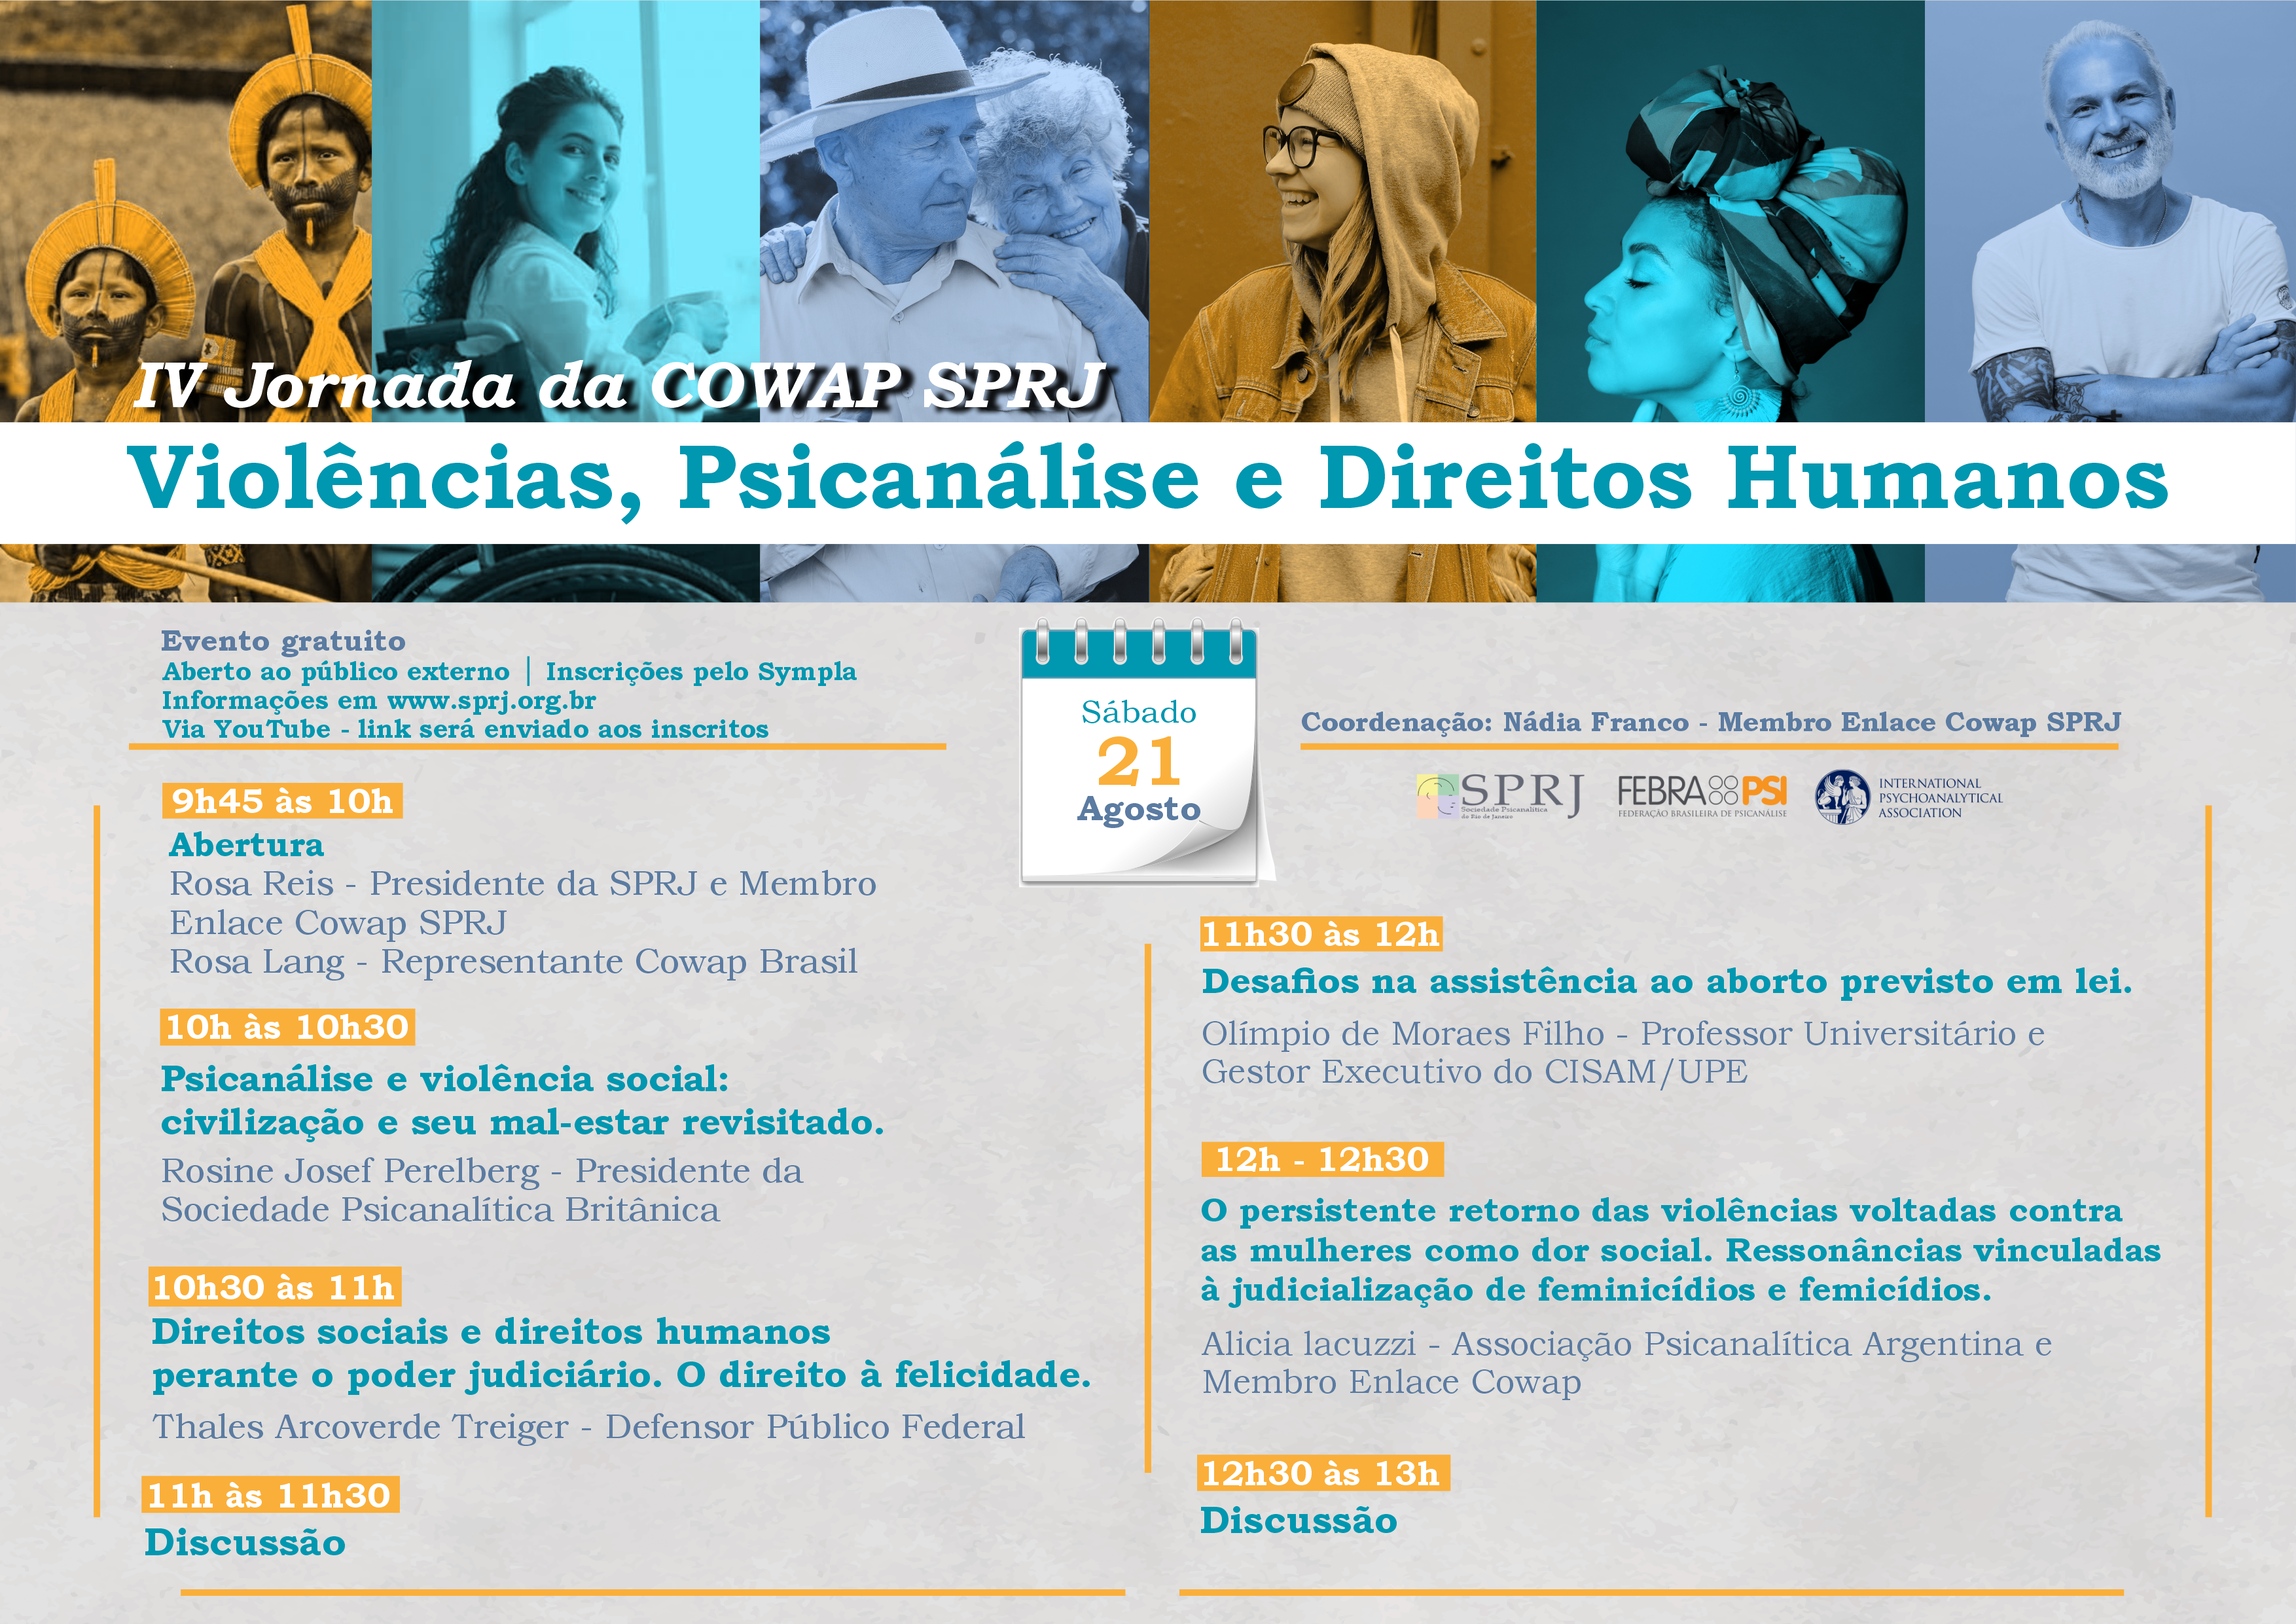 Violências, Psicanálise e Direitos Humanos - IV Jornada COWAP SPRJ @ on-line